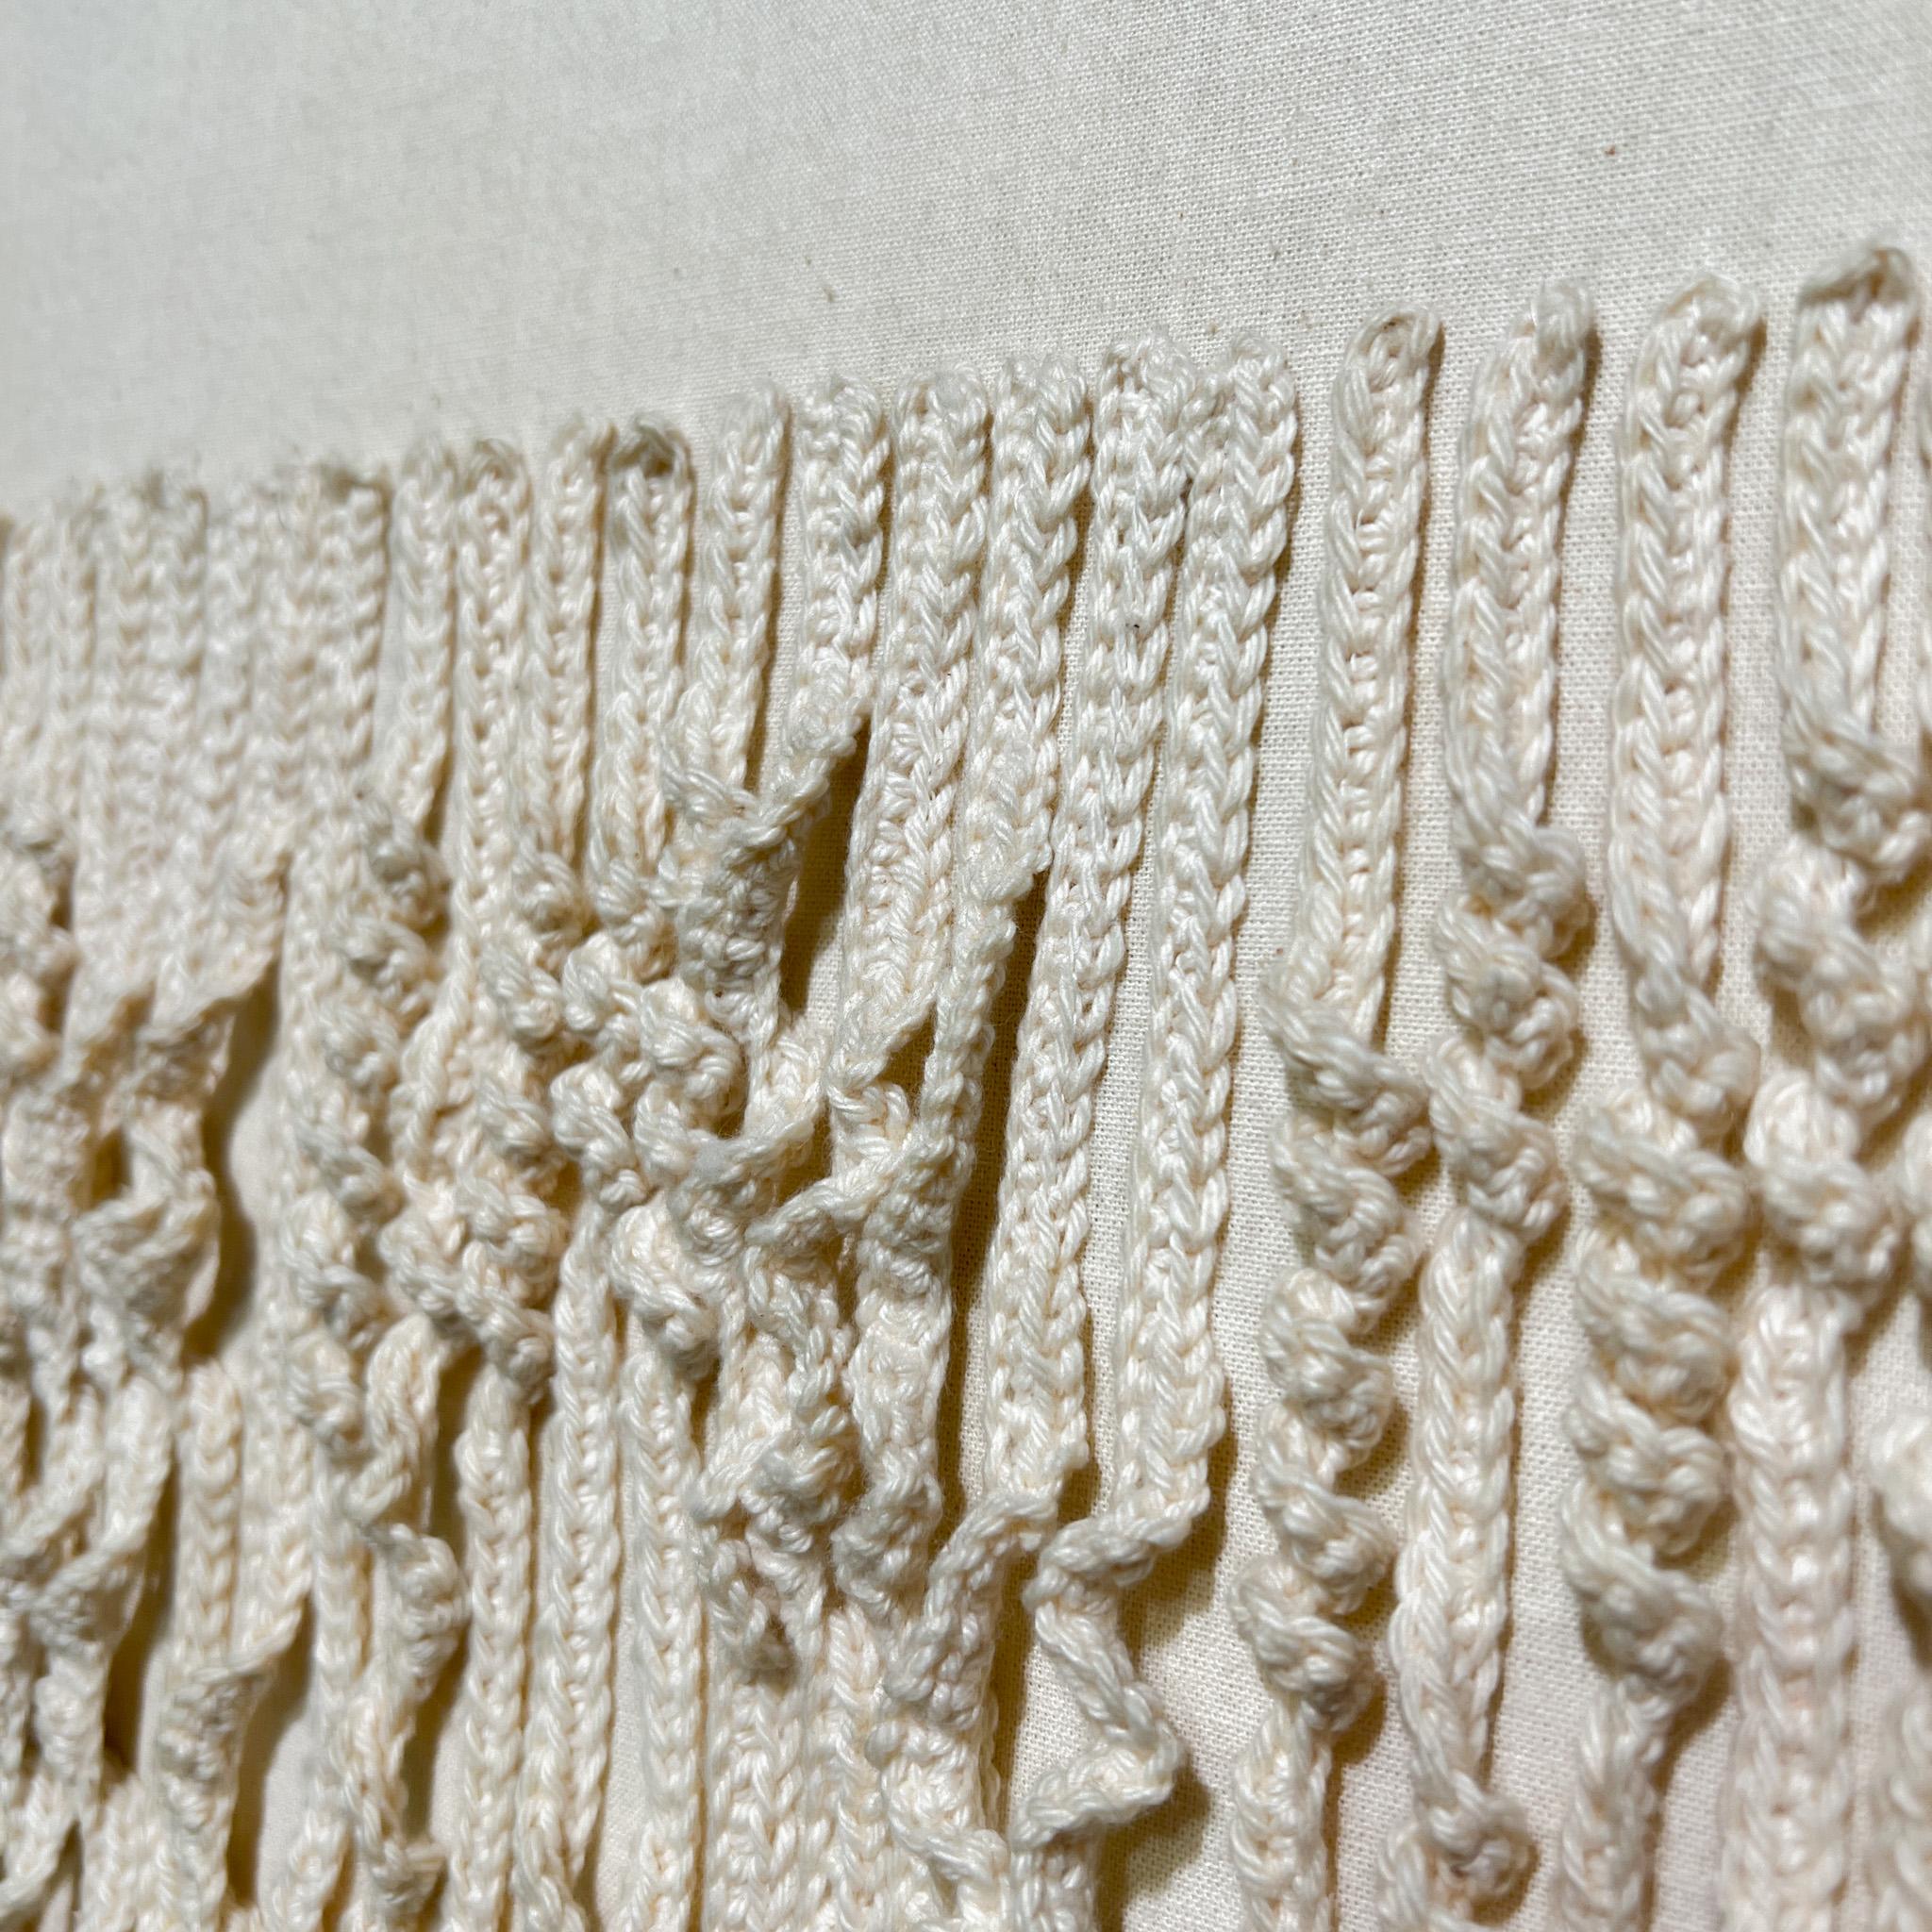 Dutch Minimalist / Zero Textile Woven Lines Artwork in White Fabric 4